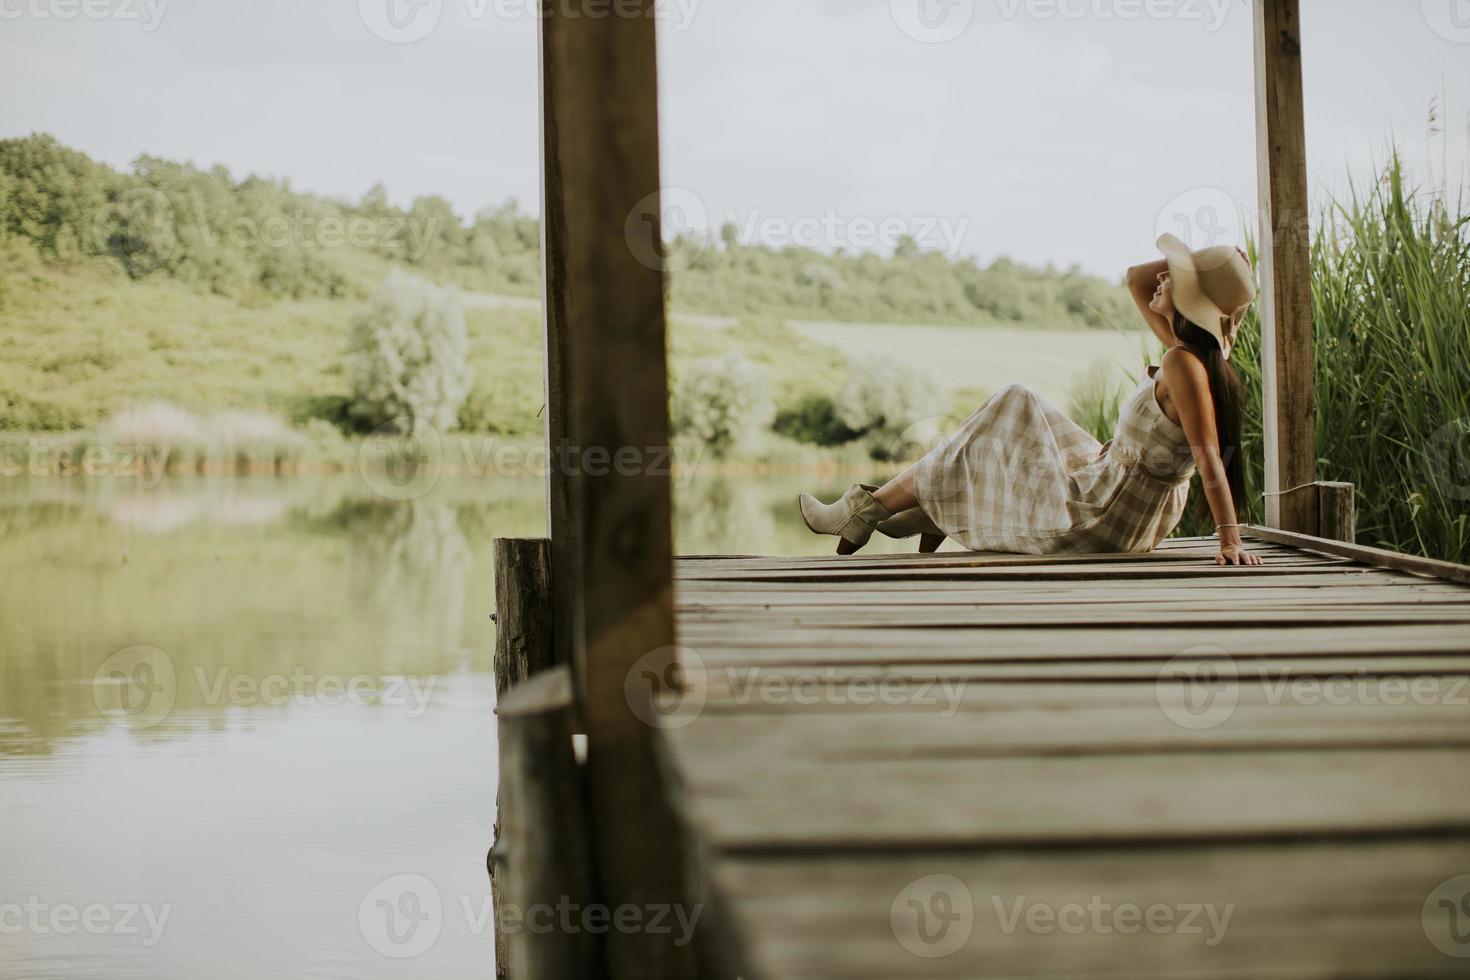 mujer joven relajante en el muelle de madera en el lago foto